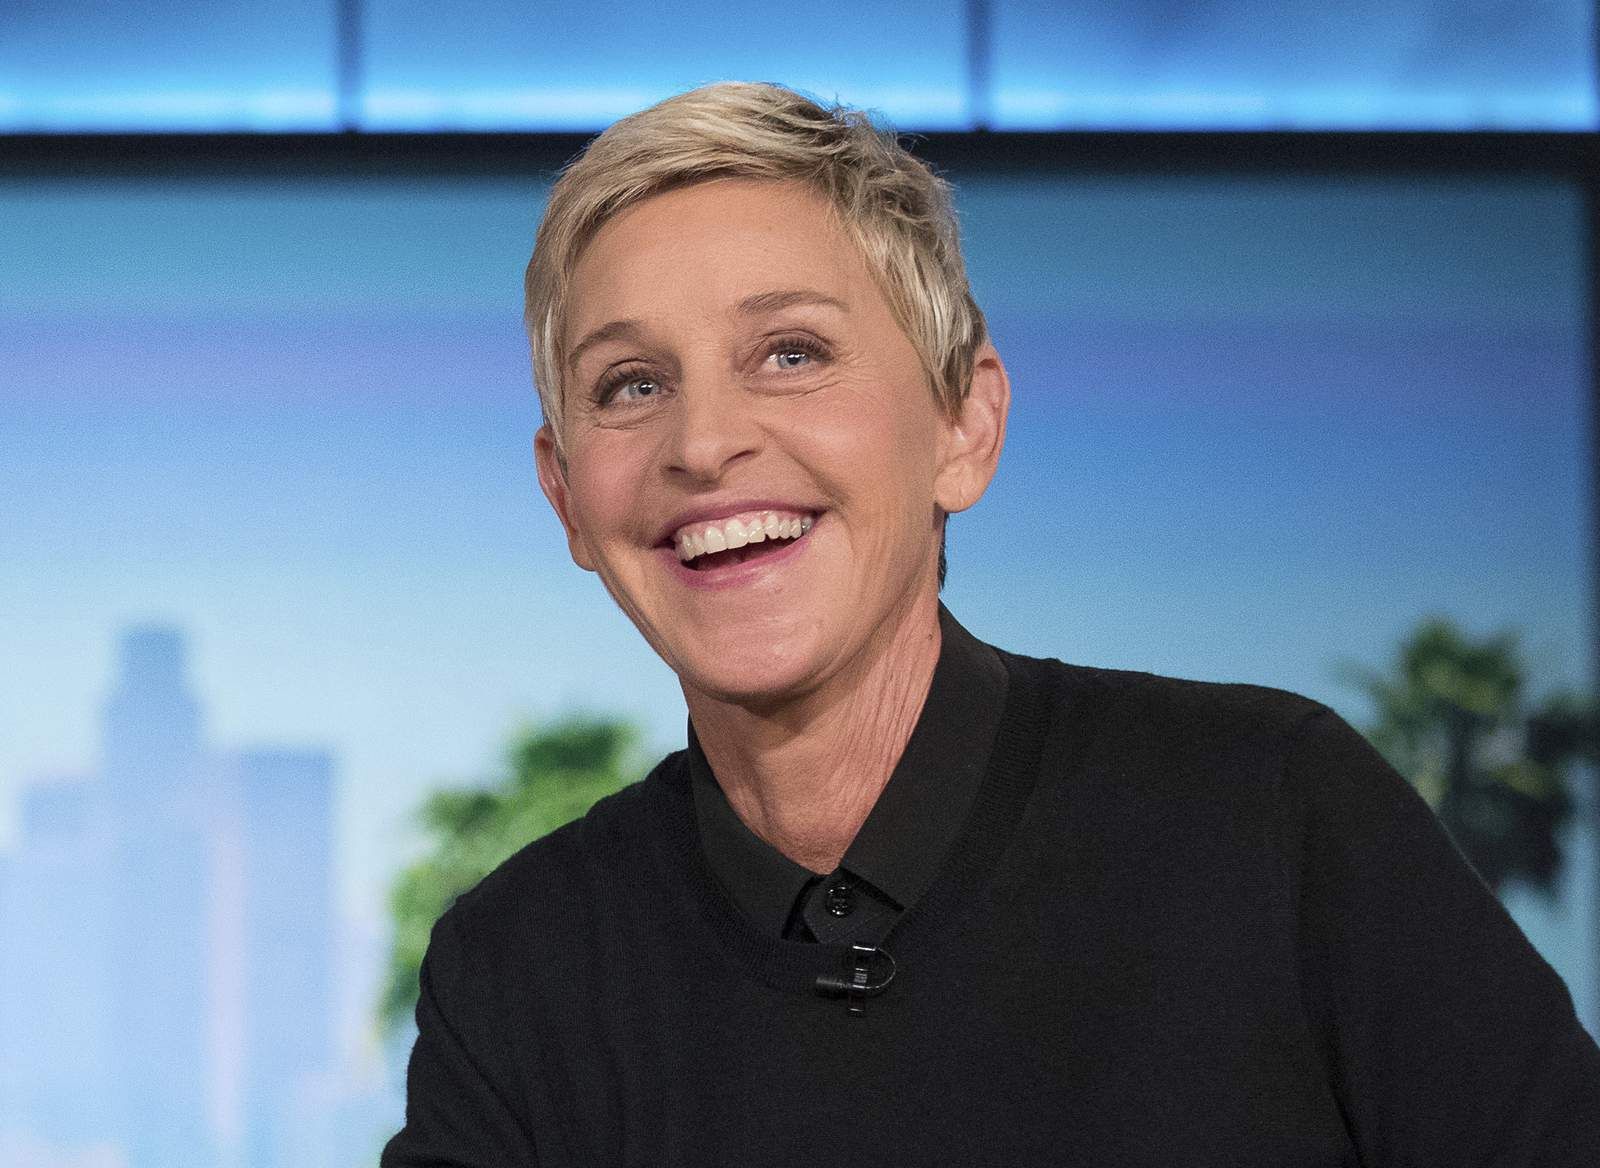 Ellen DeGeneres Tests Positive For The Novel Coronavirus; Says ‘I'm Feeling Fine Right Now’